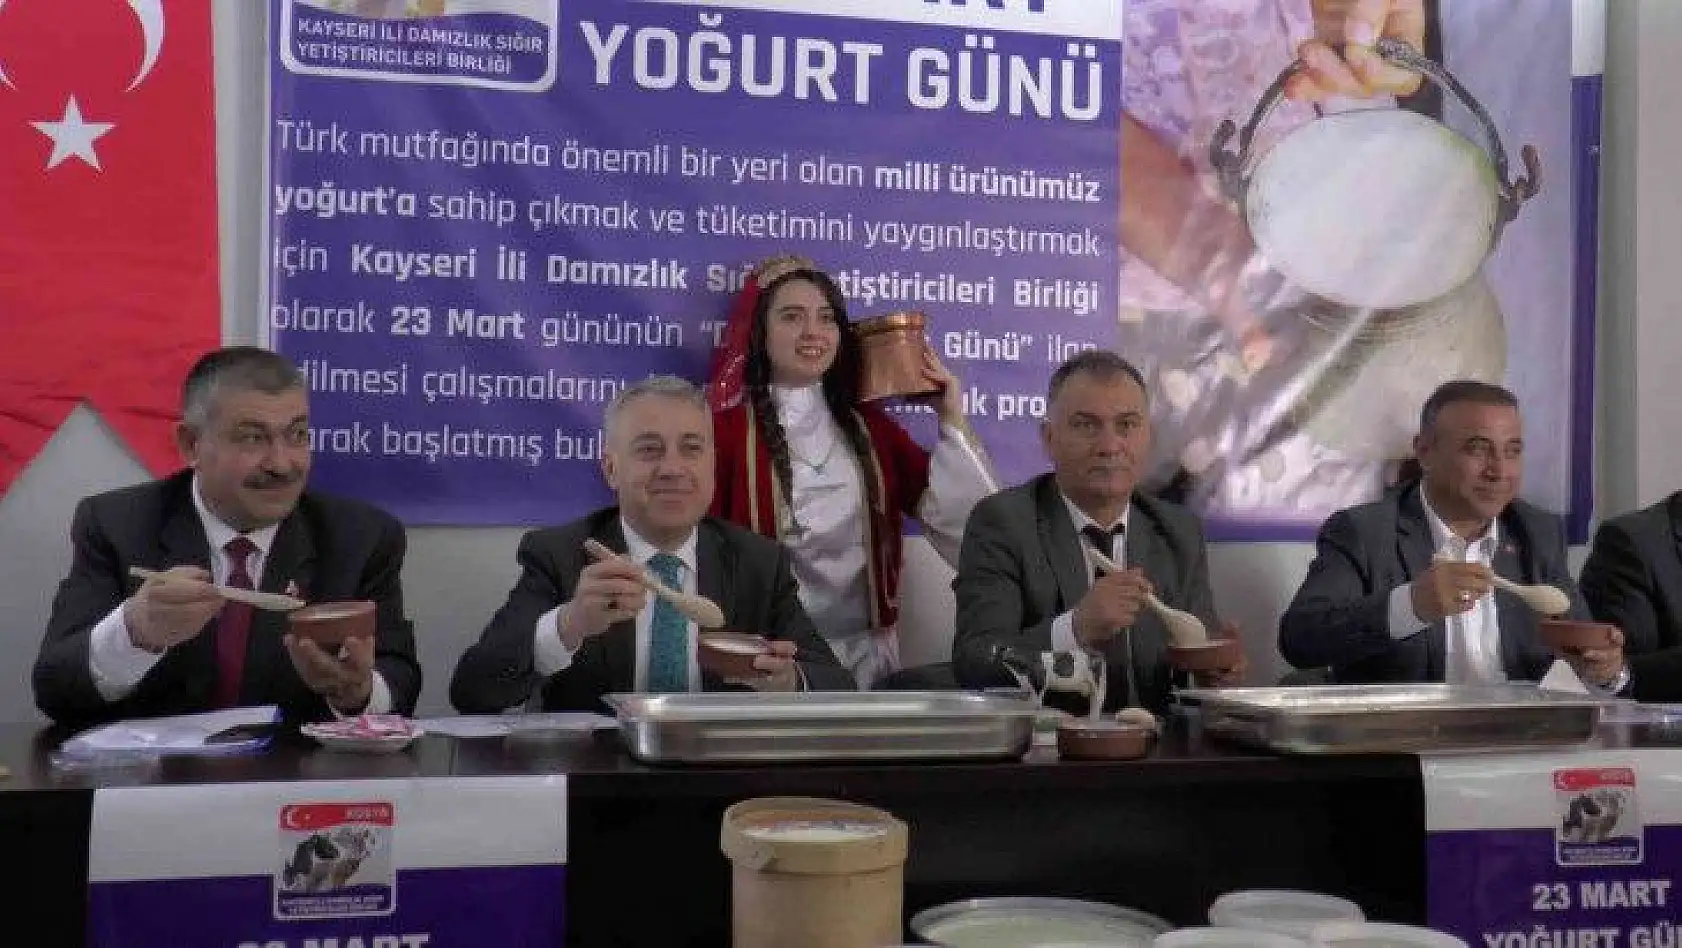 Hedef: Yoğurdun Türk'ün öz gıdası olduğunu dünyaya duyurmak